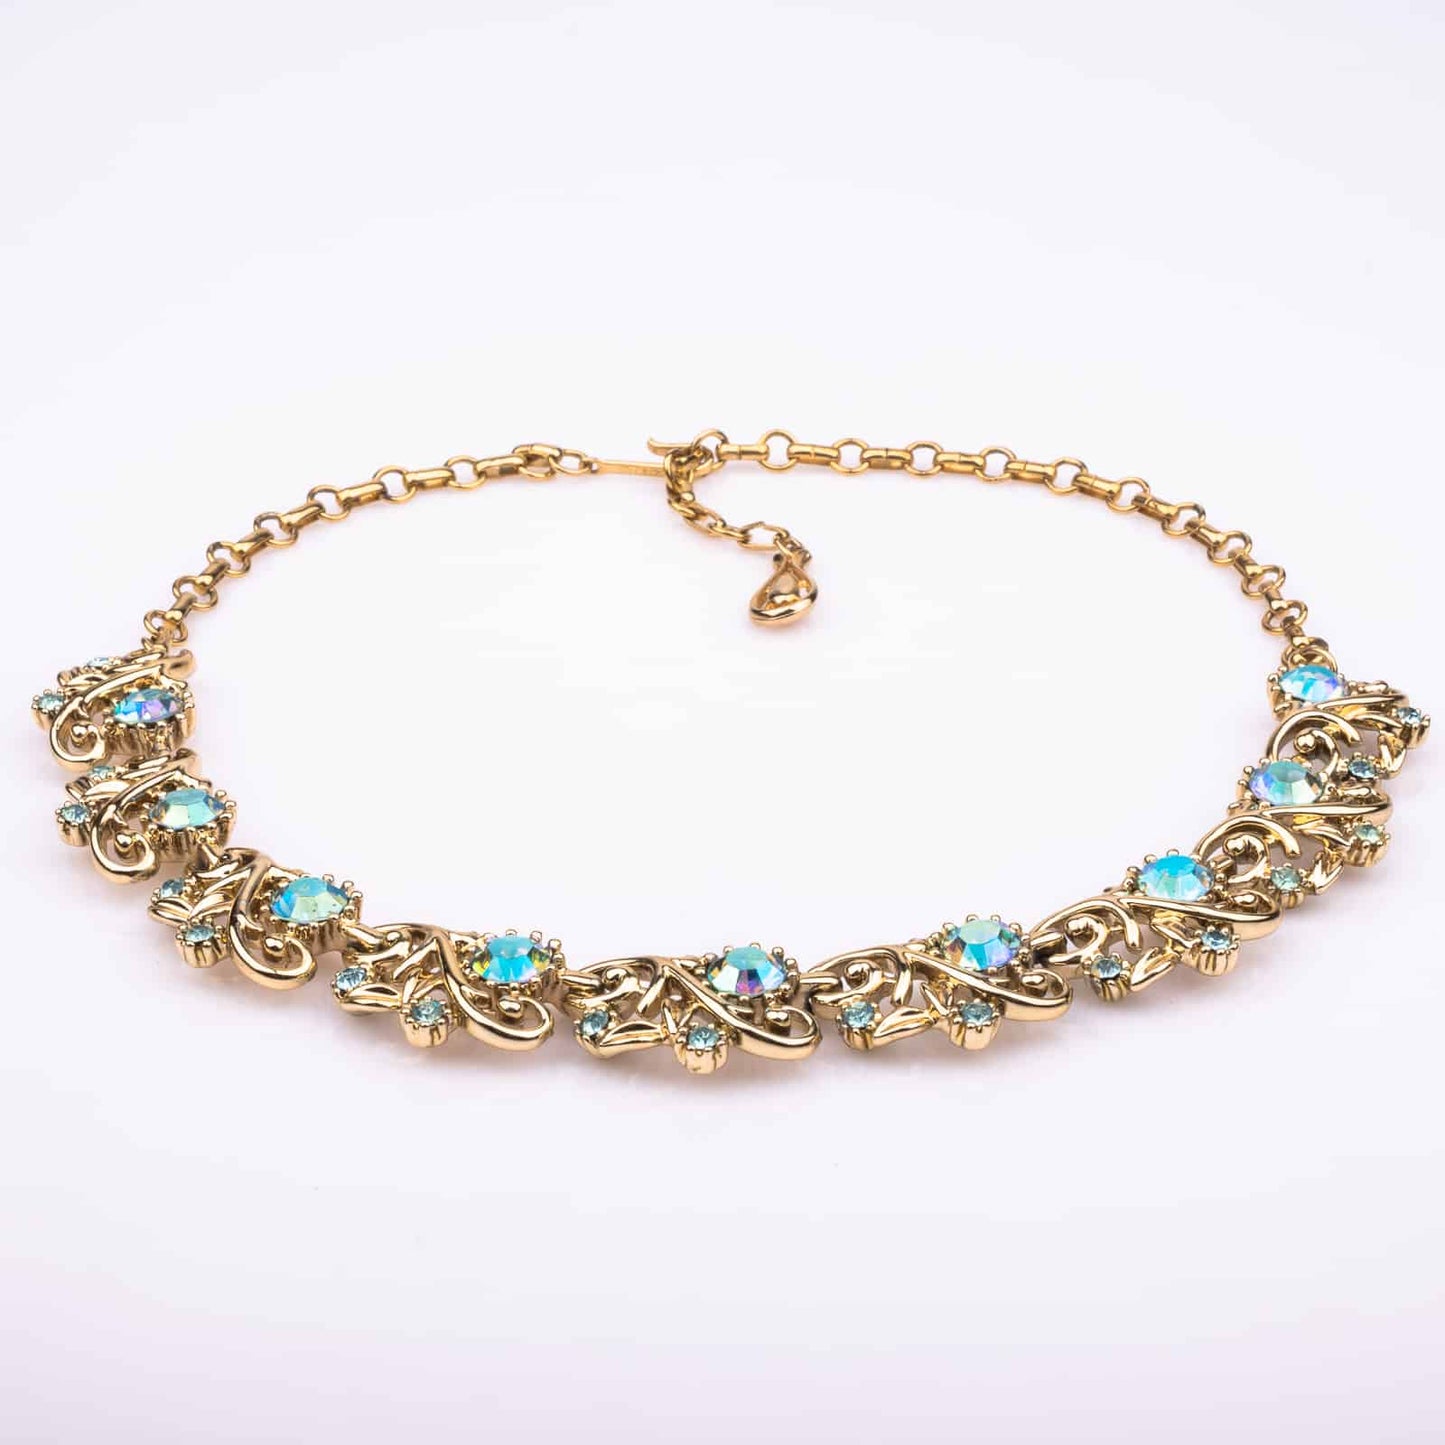 CORO-Halskette-goldfarben-Aqua-Blaue-Strasssteine